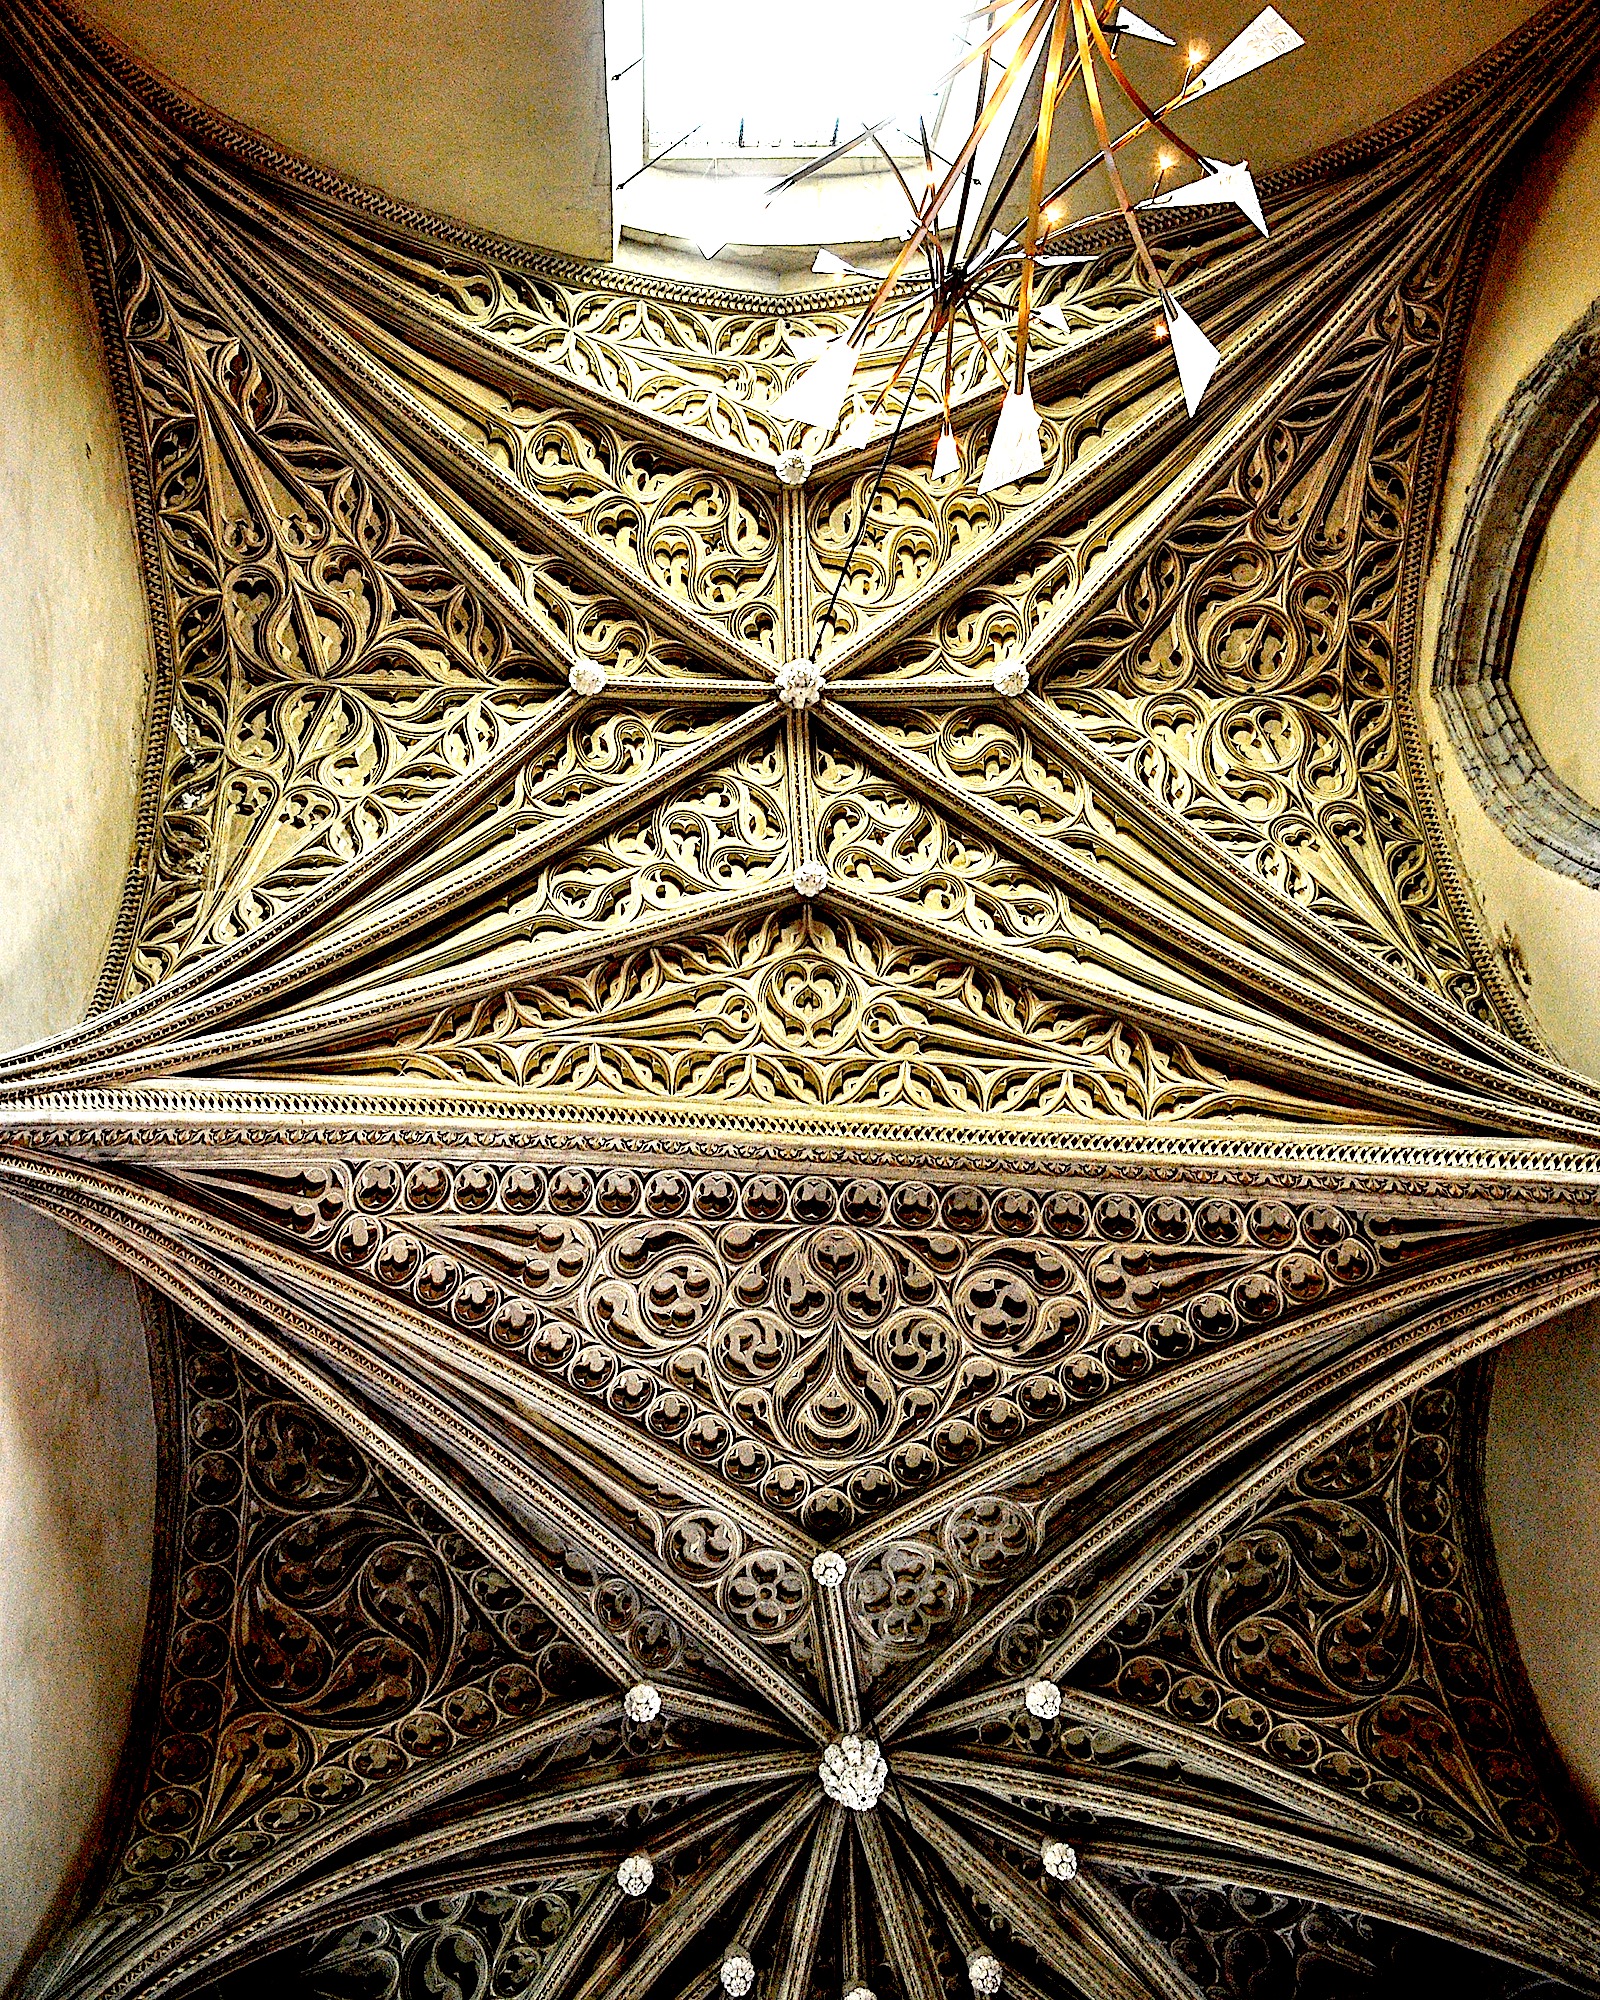 The faux painted ceiling of the Chateau des Ducs Savoie